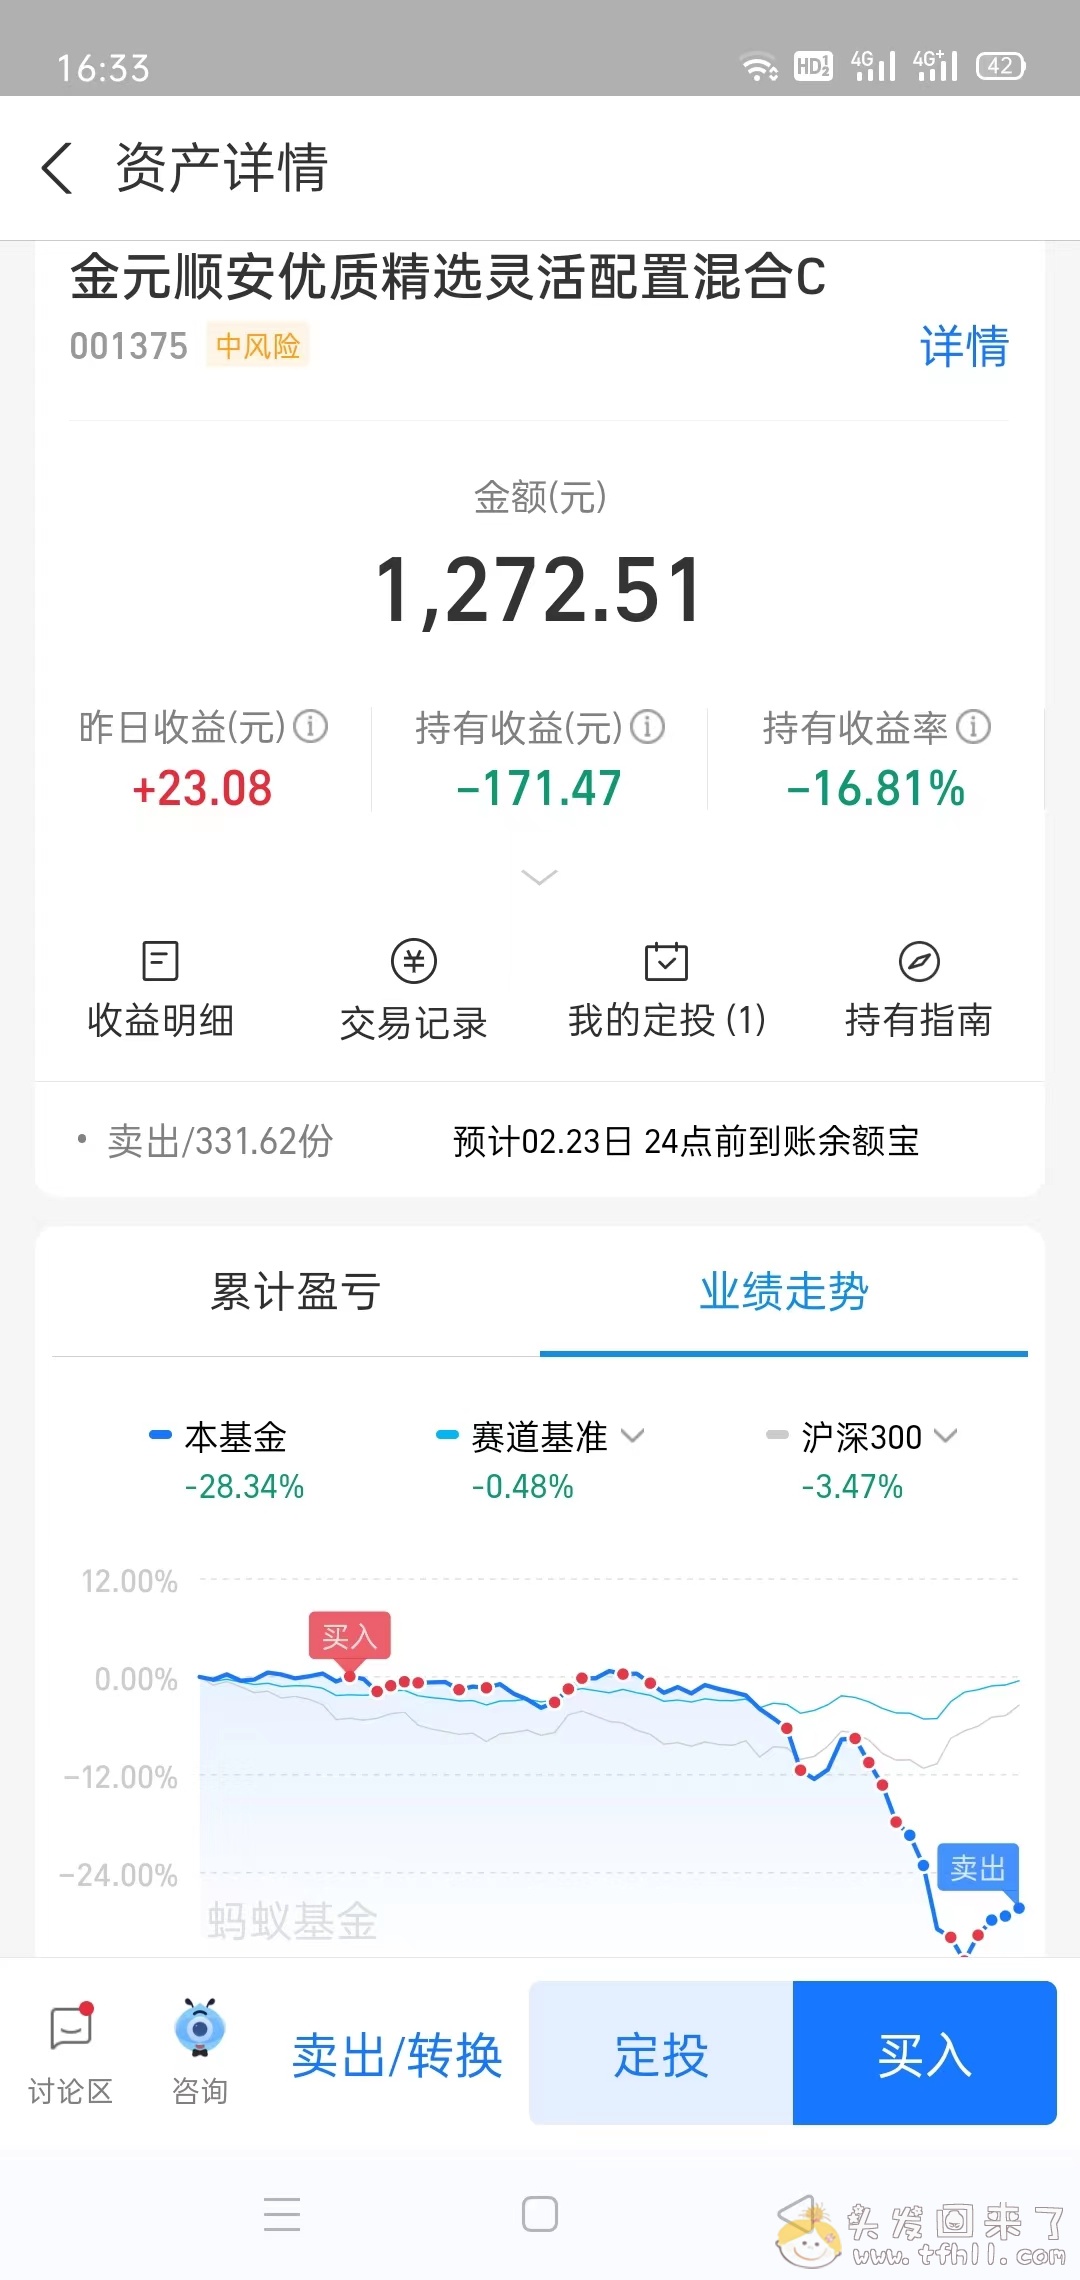 上证指数7连阳，我的股票账户2月份收益今天终于翻红了图片 No.13